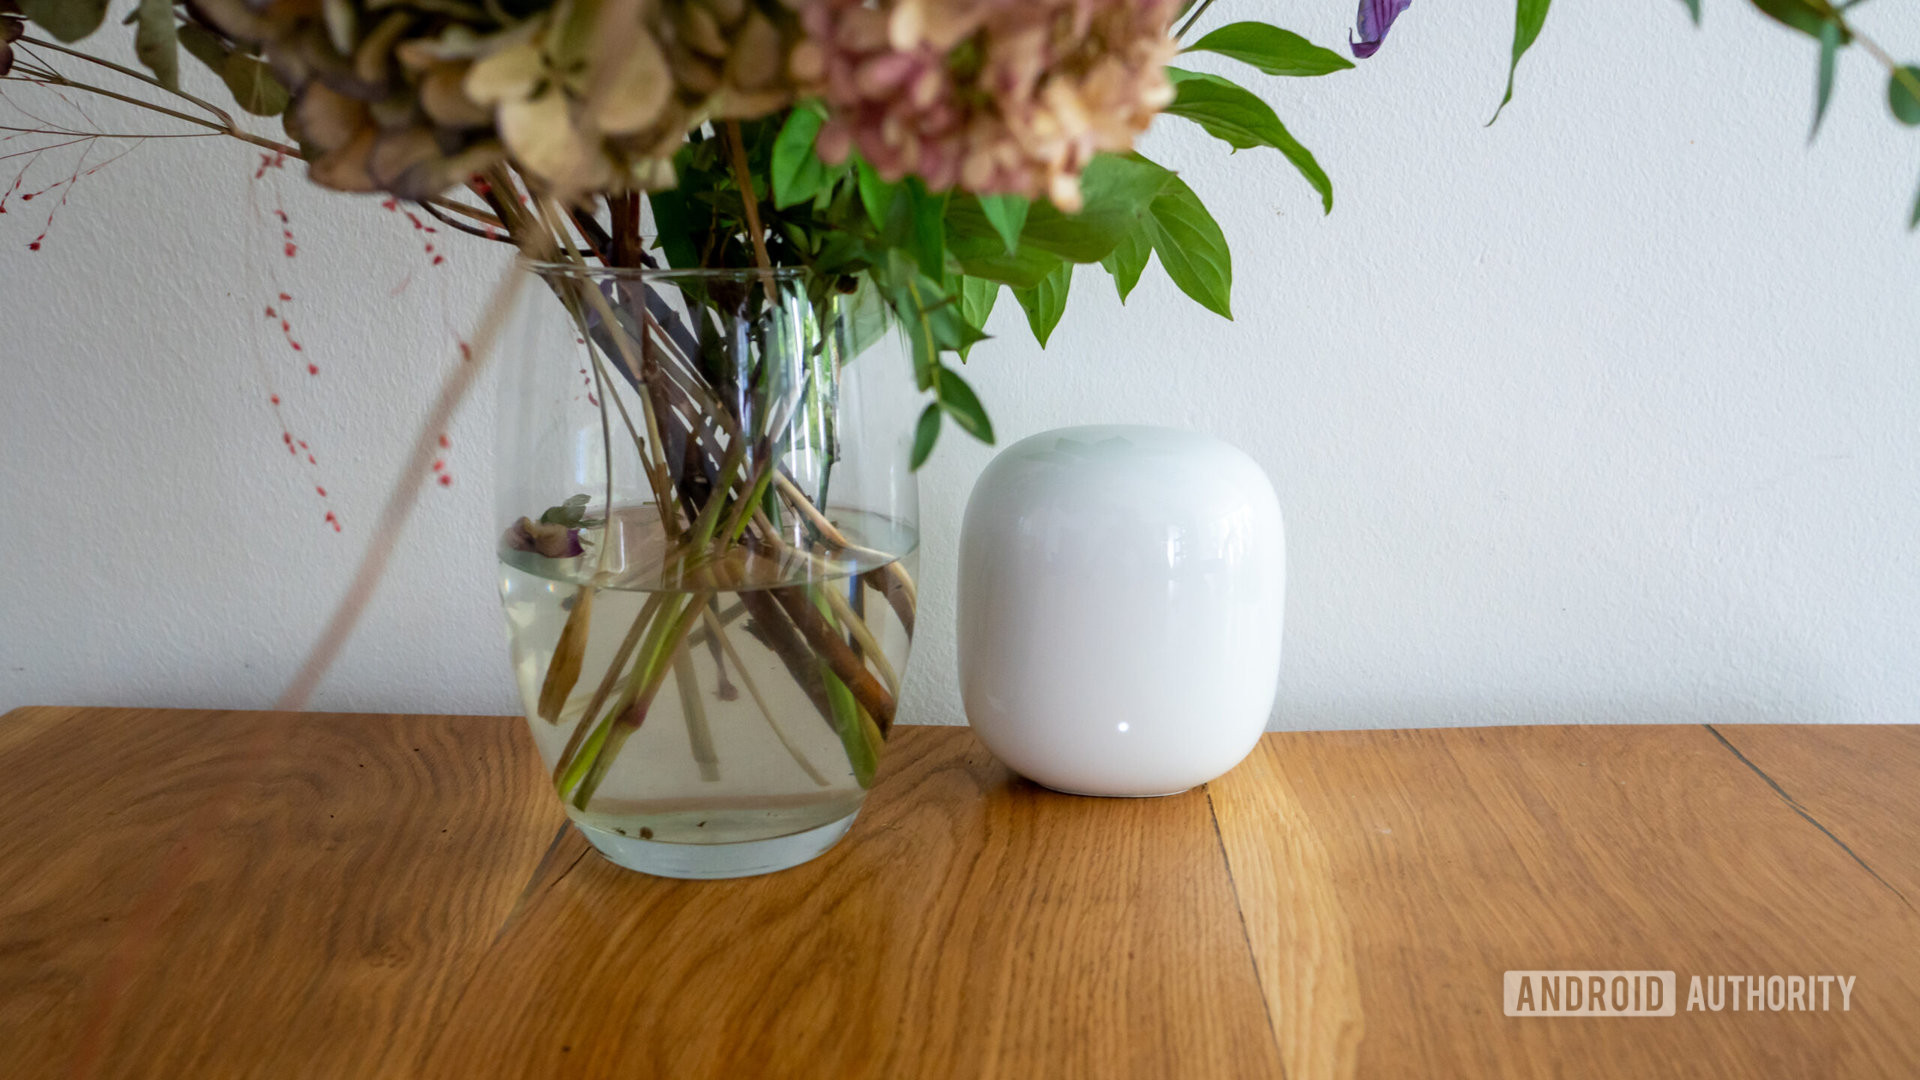 Tampilan depan router Google Nest Wi Fi Pro di atas meja di samping vas bunga